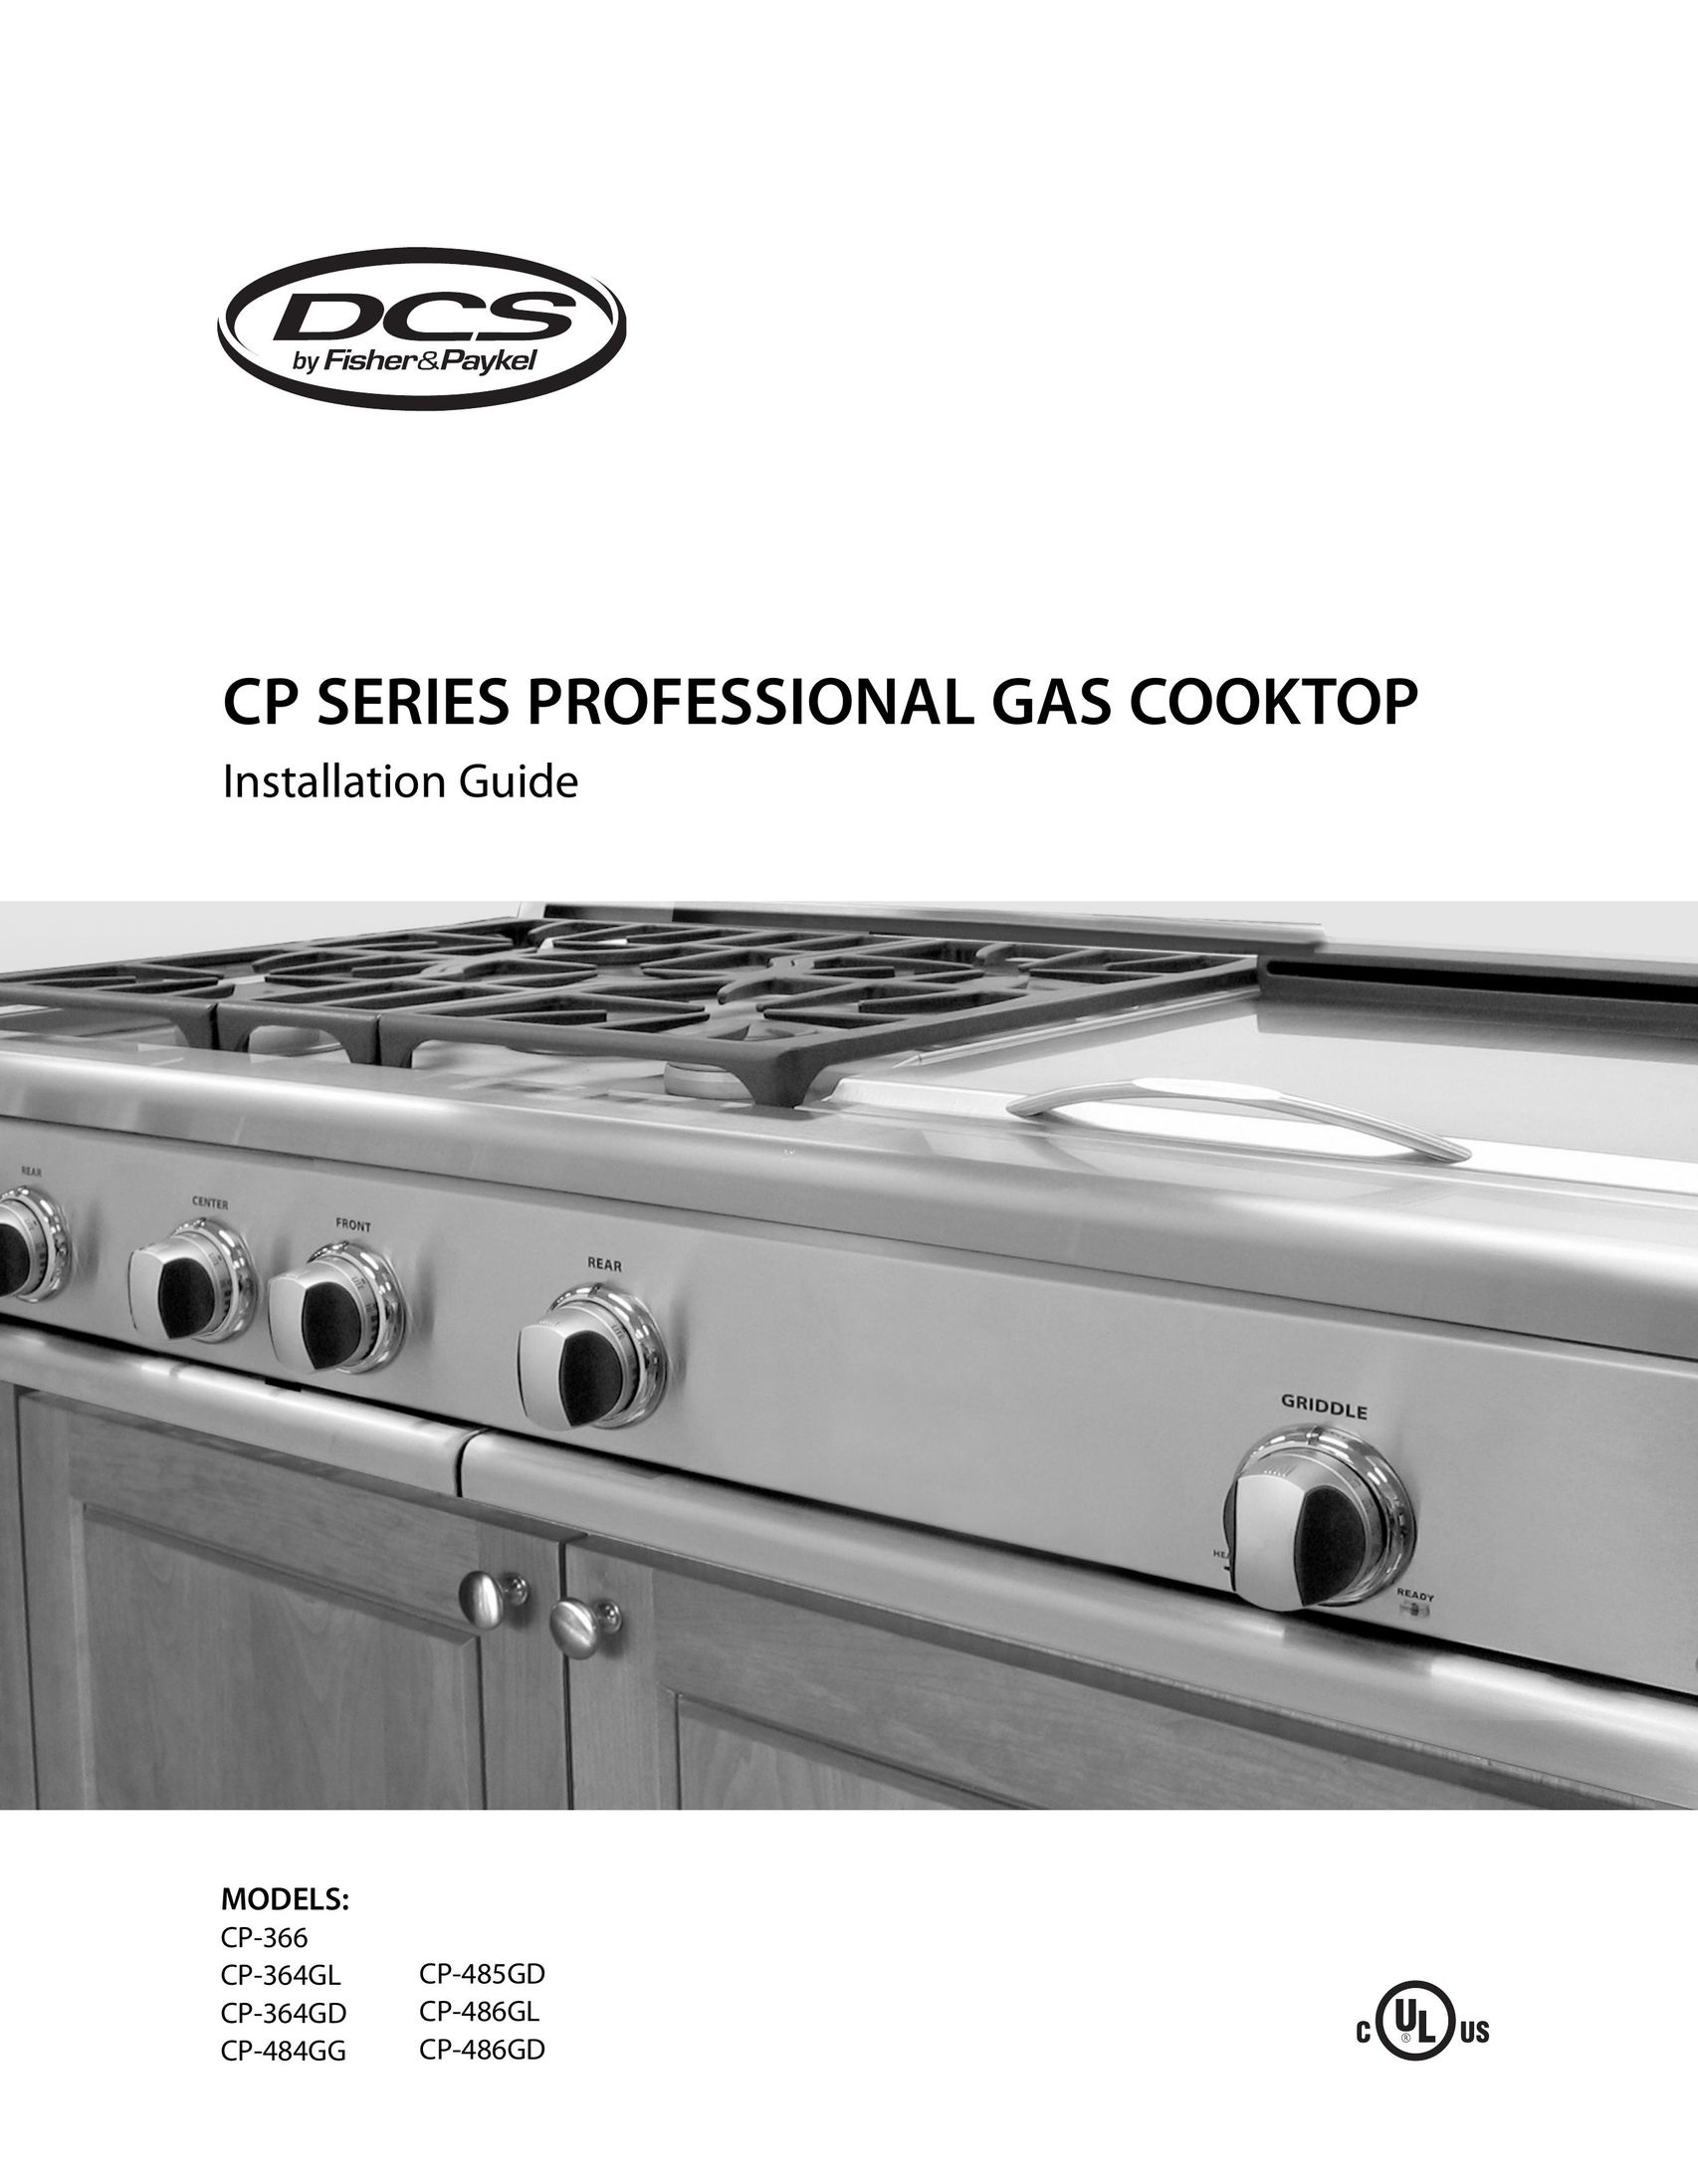 DCS CP-364GD Cooktop User Manual